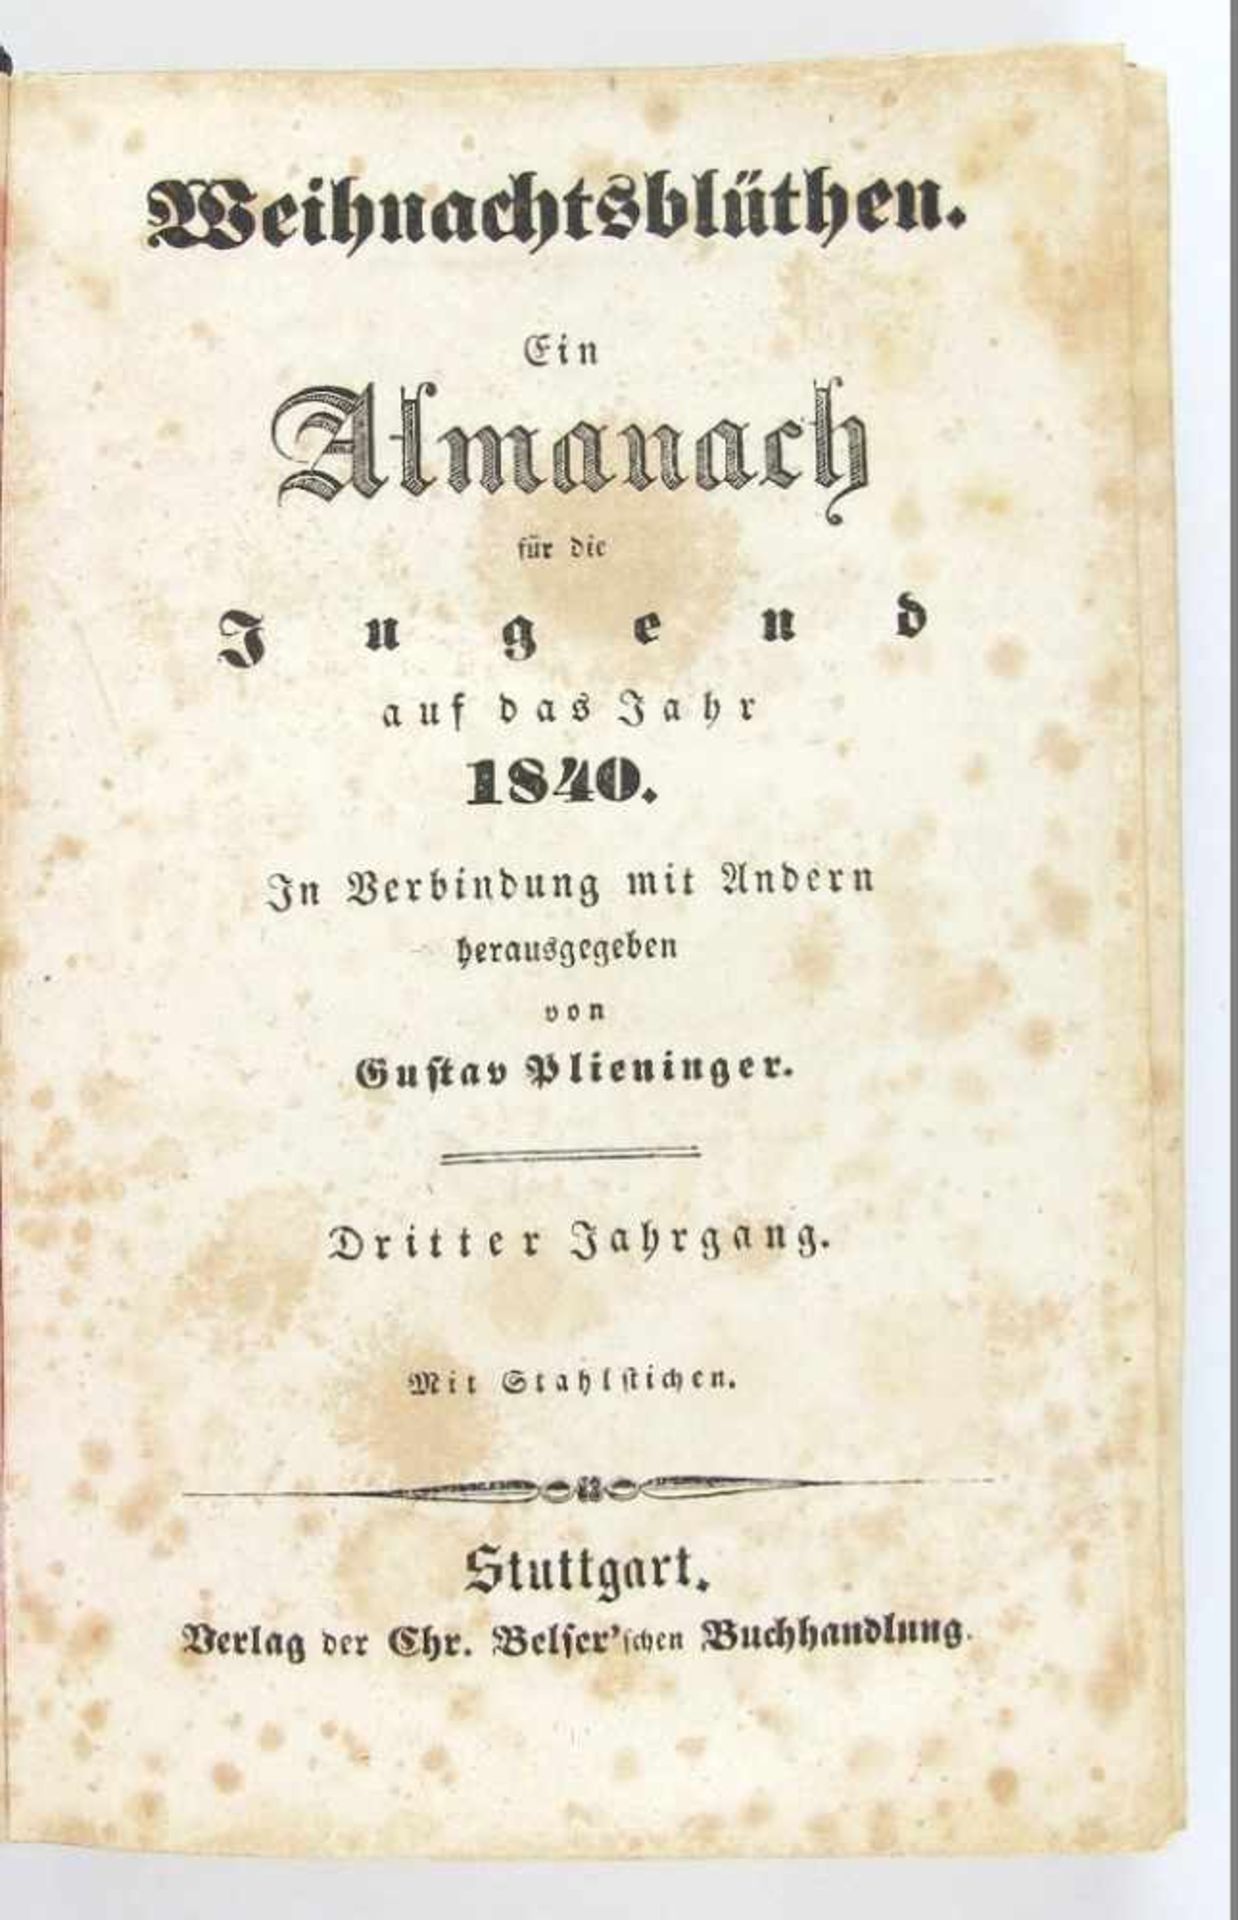 Almanach: Plieninger, Gustav (Hrsg.). Weihnachtsblüthen.<